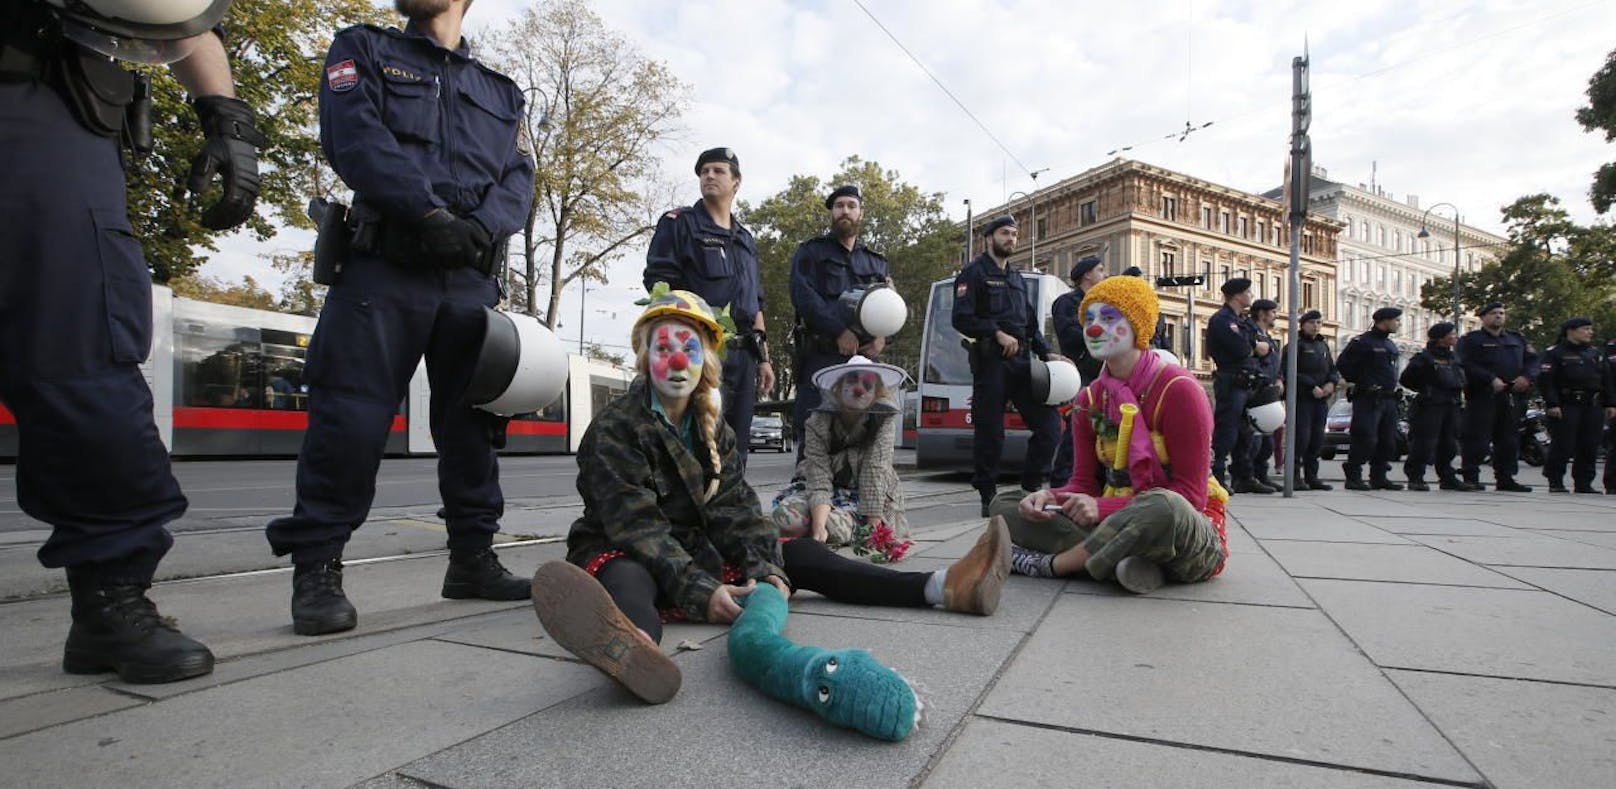 Zum Start des Burka-Verbots hatten Anfang Oktober maskierte Clowns demonstriert.